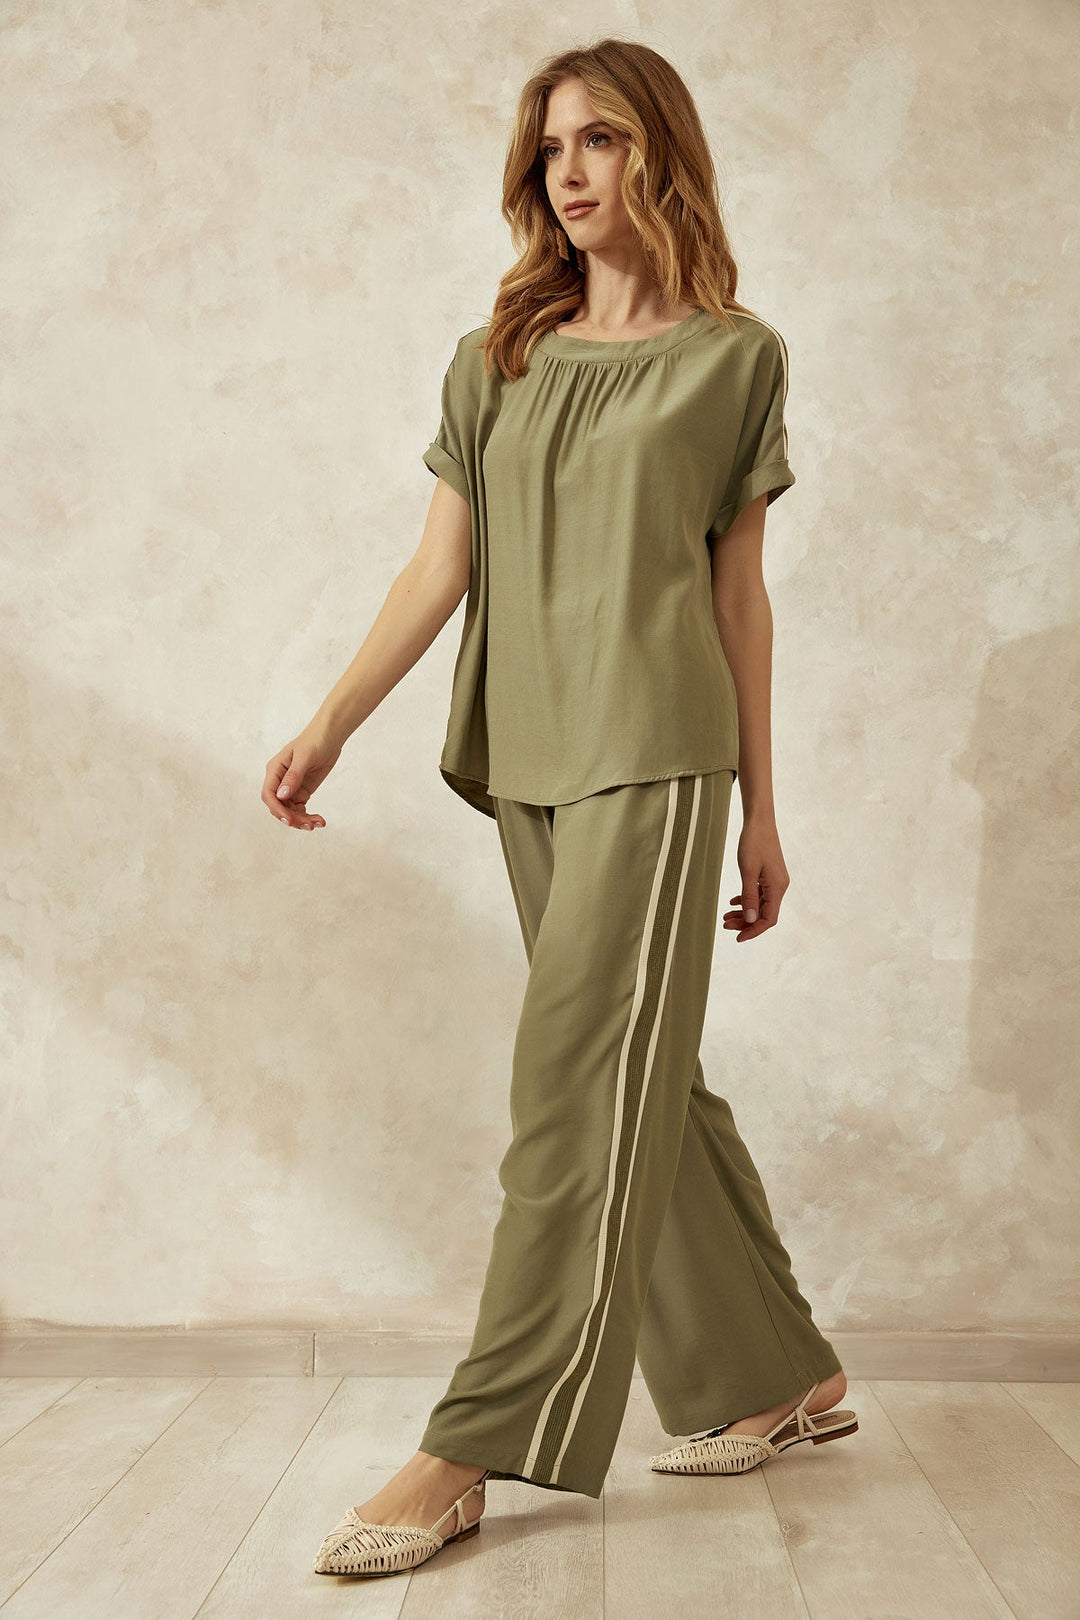 Μπλούζα με τρέσα και ρεβερ στο μανίκι Figaro Fashion - A Collection Boutique